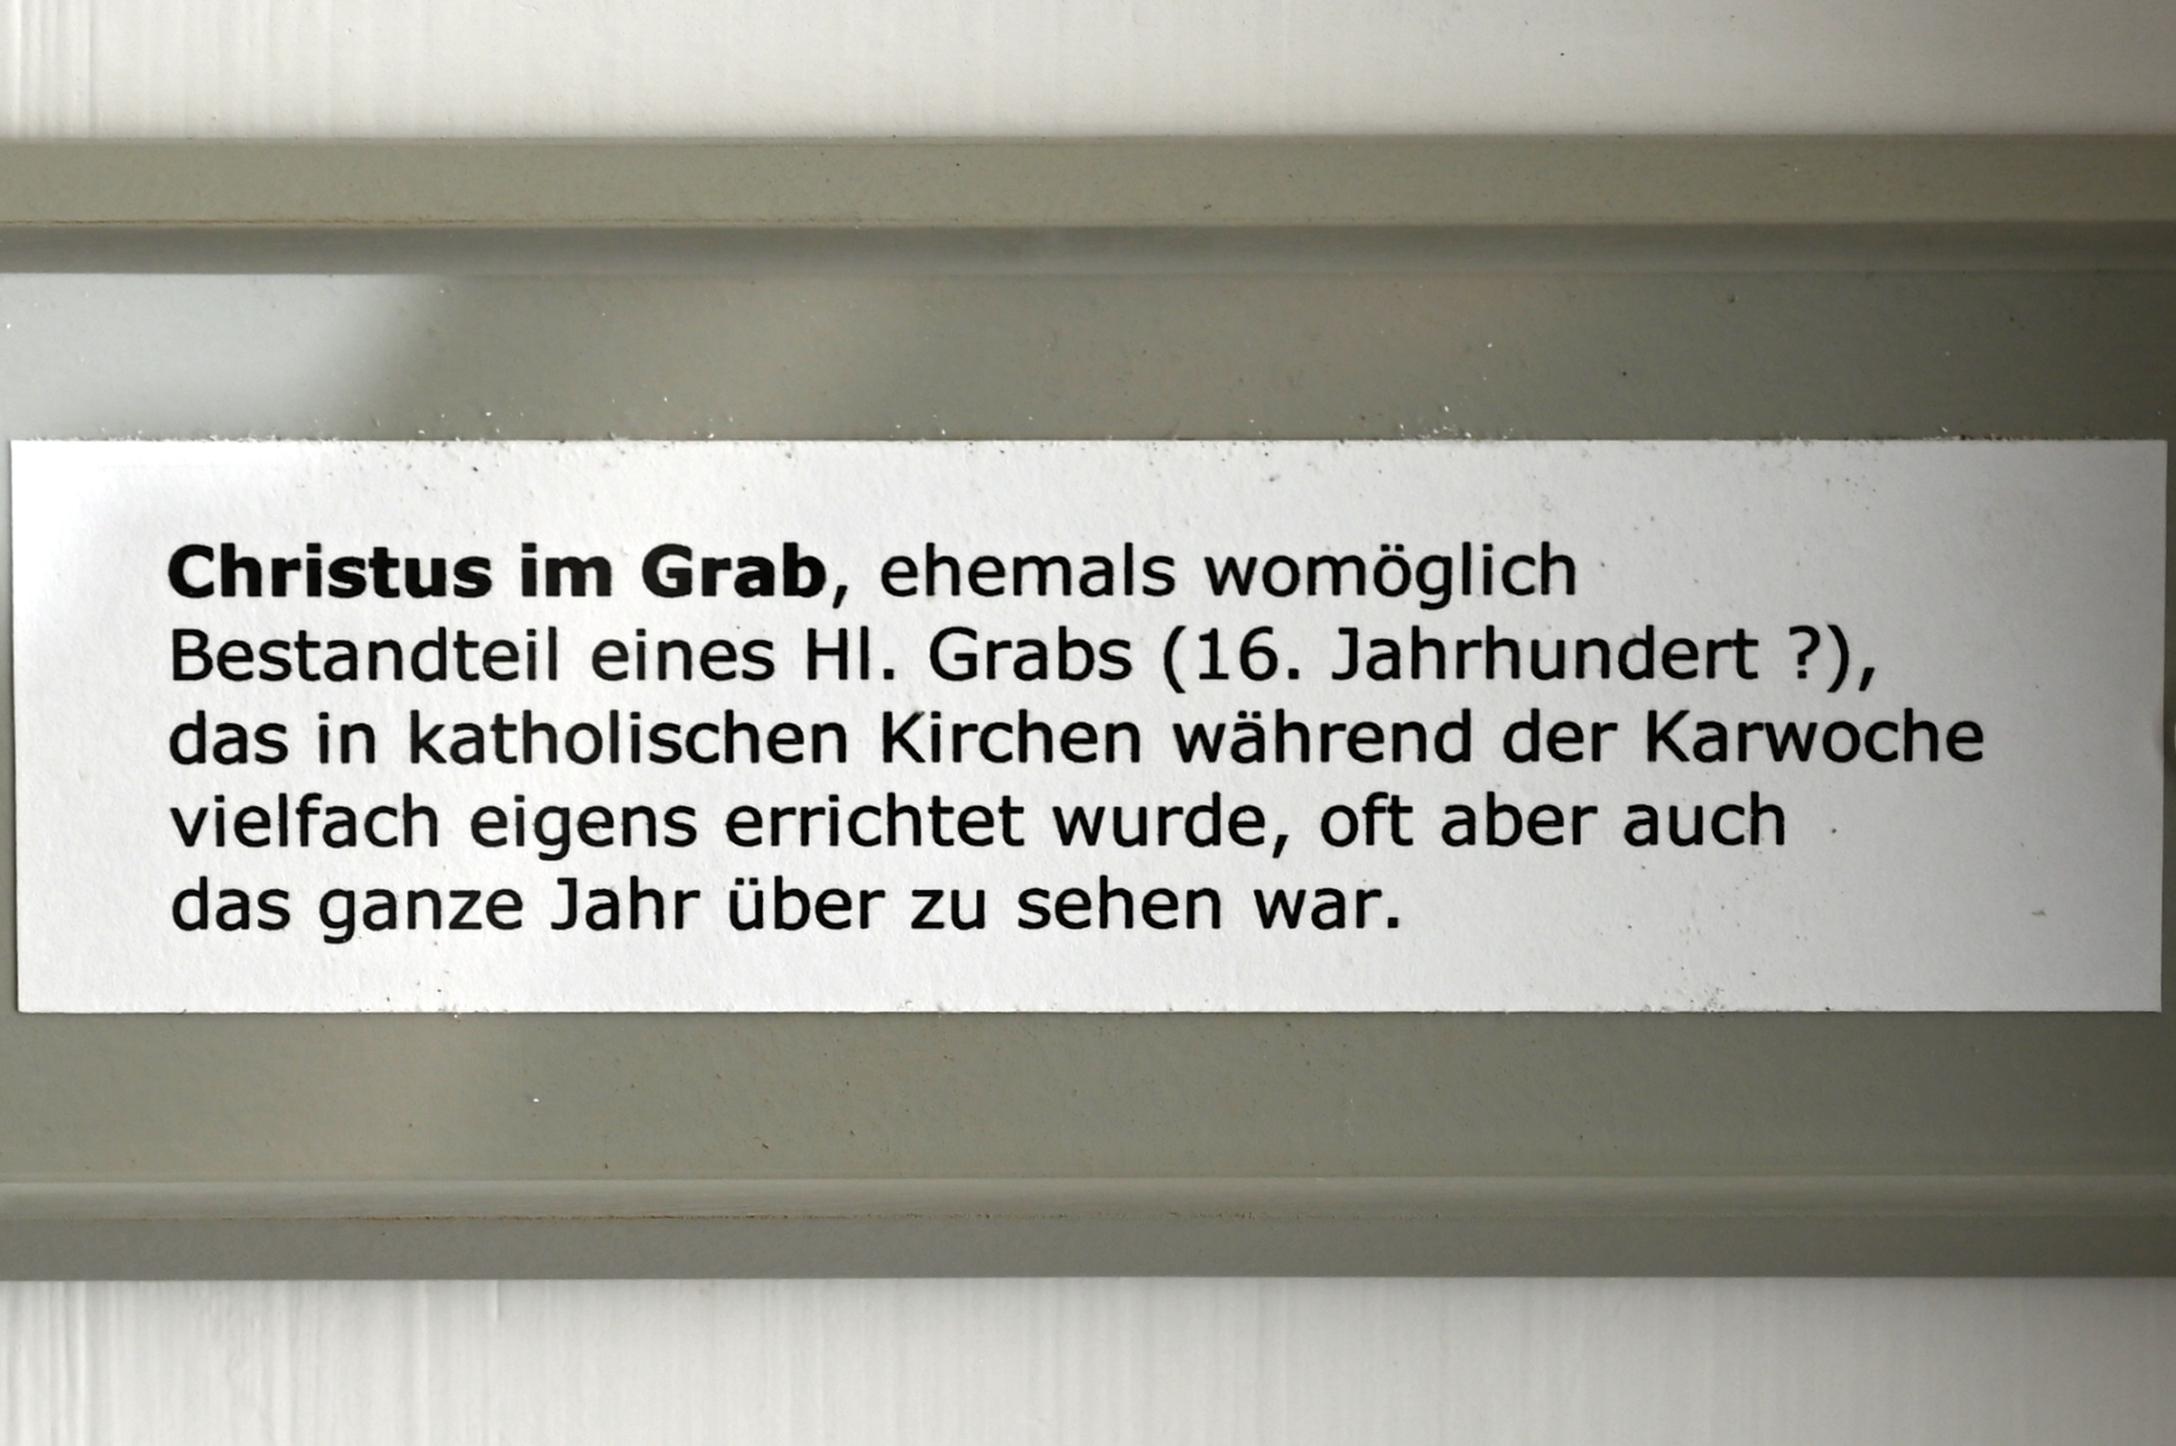 Christus im Grab, Überlingen, Städtisches Museum, Gotisches Zimmer, 16. Jhd., Bild 2/2